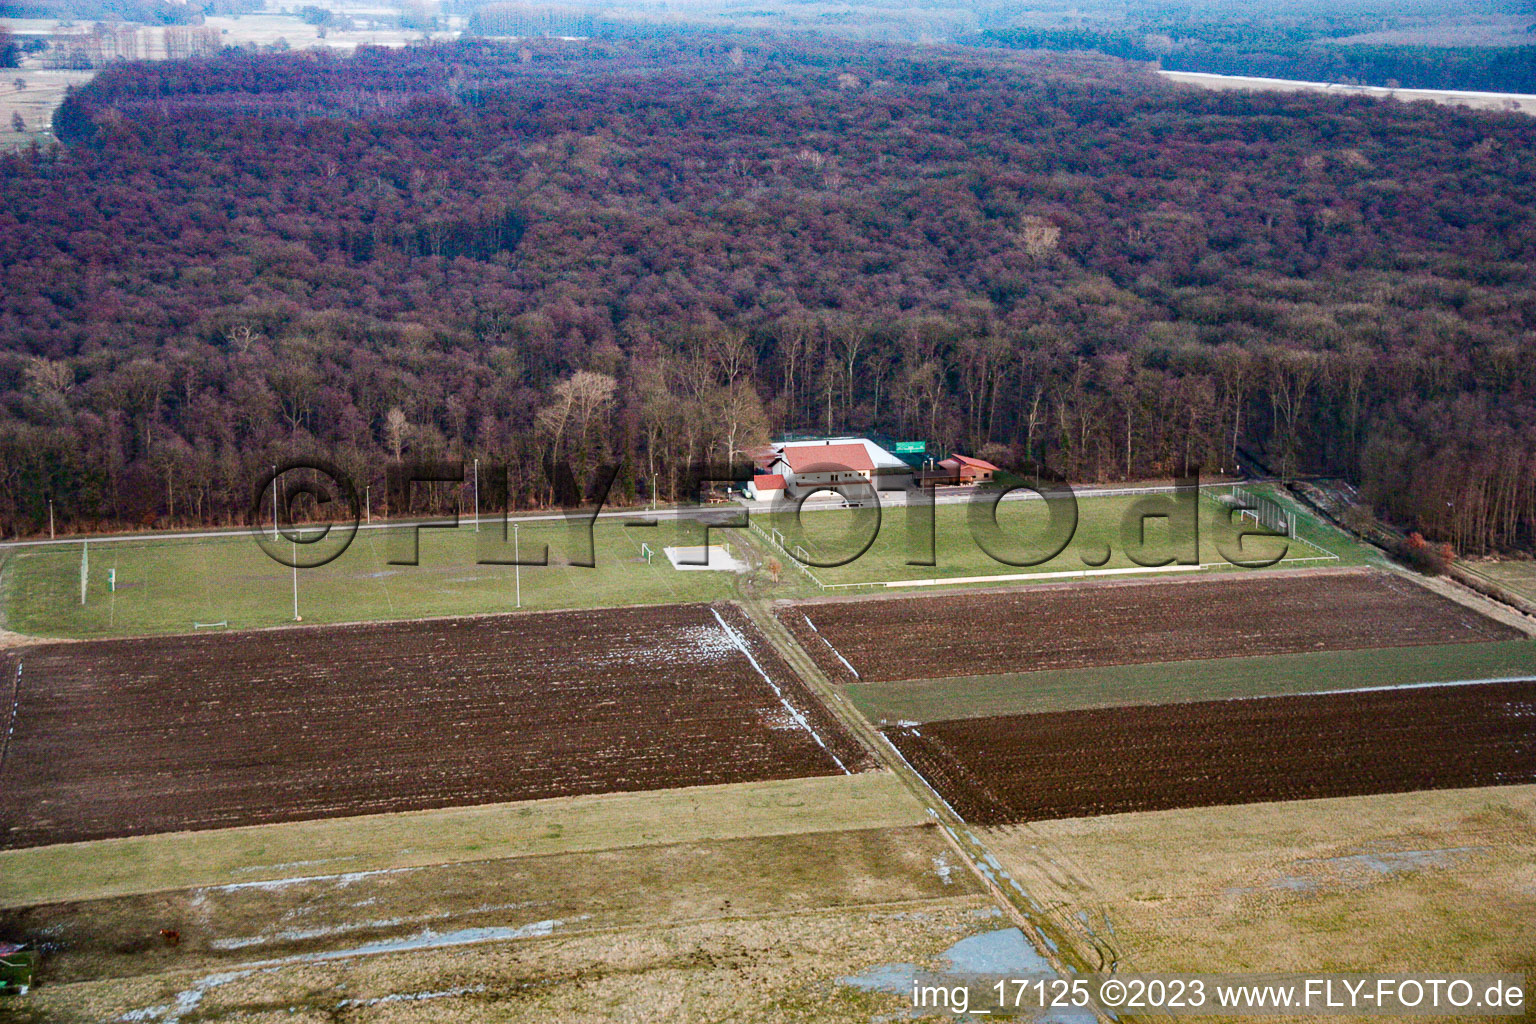 Vue aérienne de Terrains de sport à Freckenfeld dans le département Rhénanie-Palatinat, Allemagne